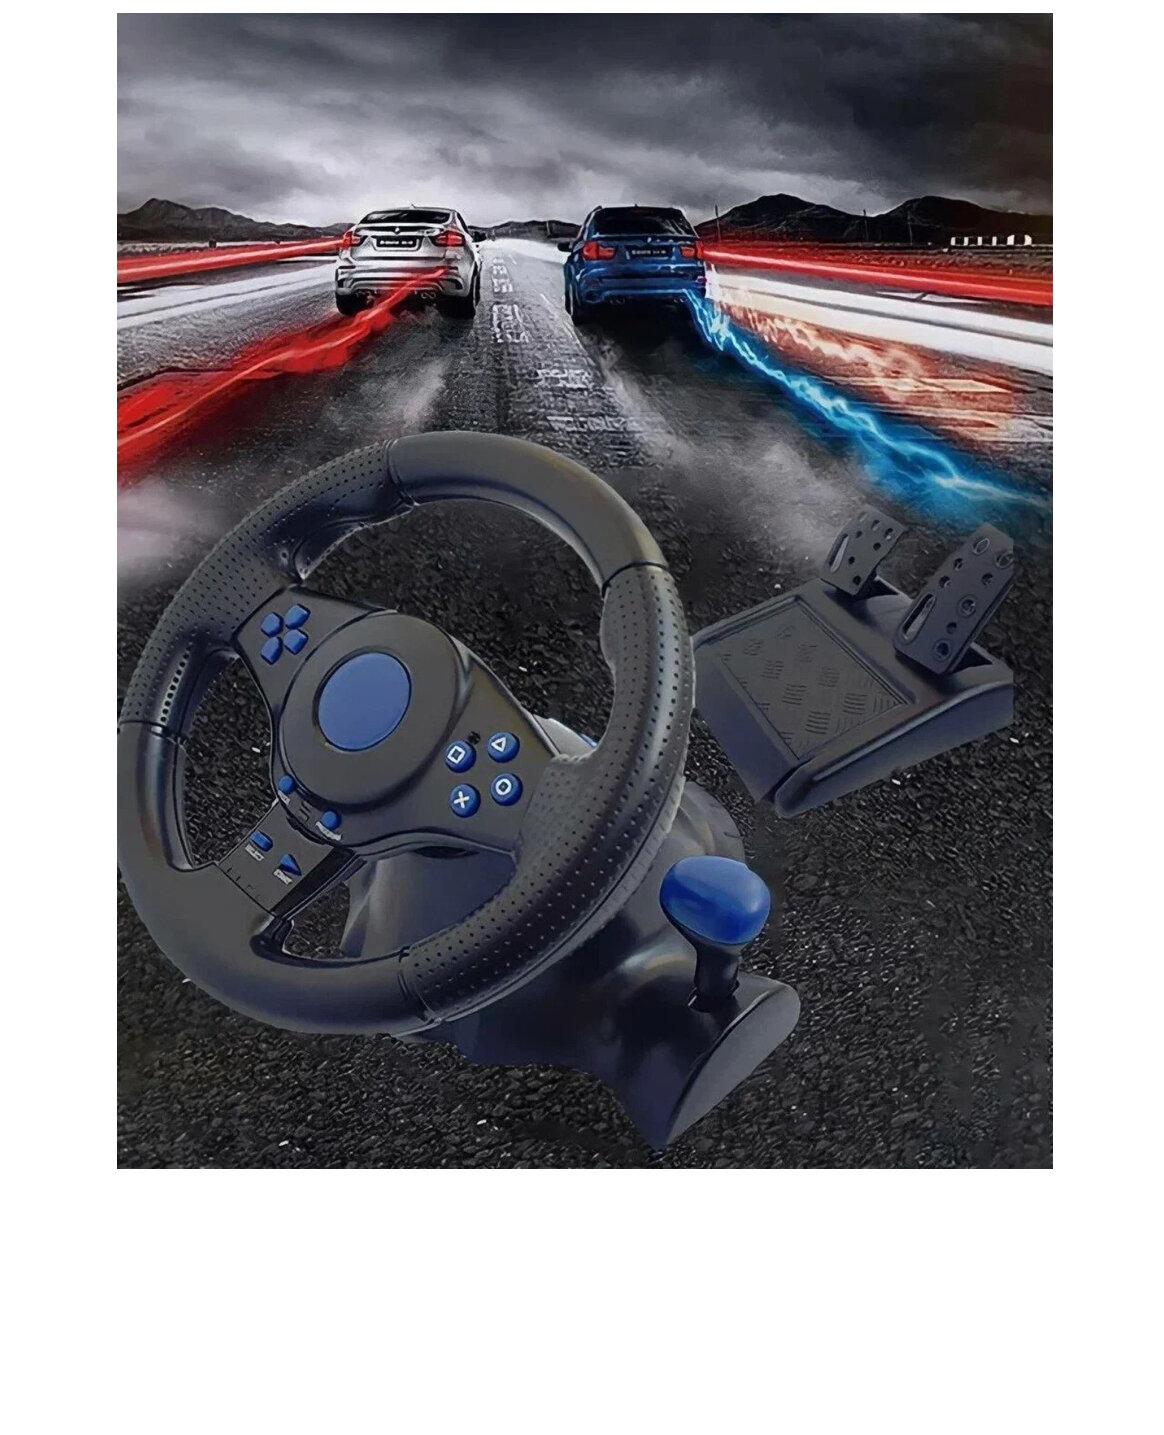 Игровой руль GT-V 7 для компьютера  ПК Xbox 360 Xbox One PS4 PS3 Android / Гоночный симулятор вождения с педалями и рулём